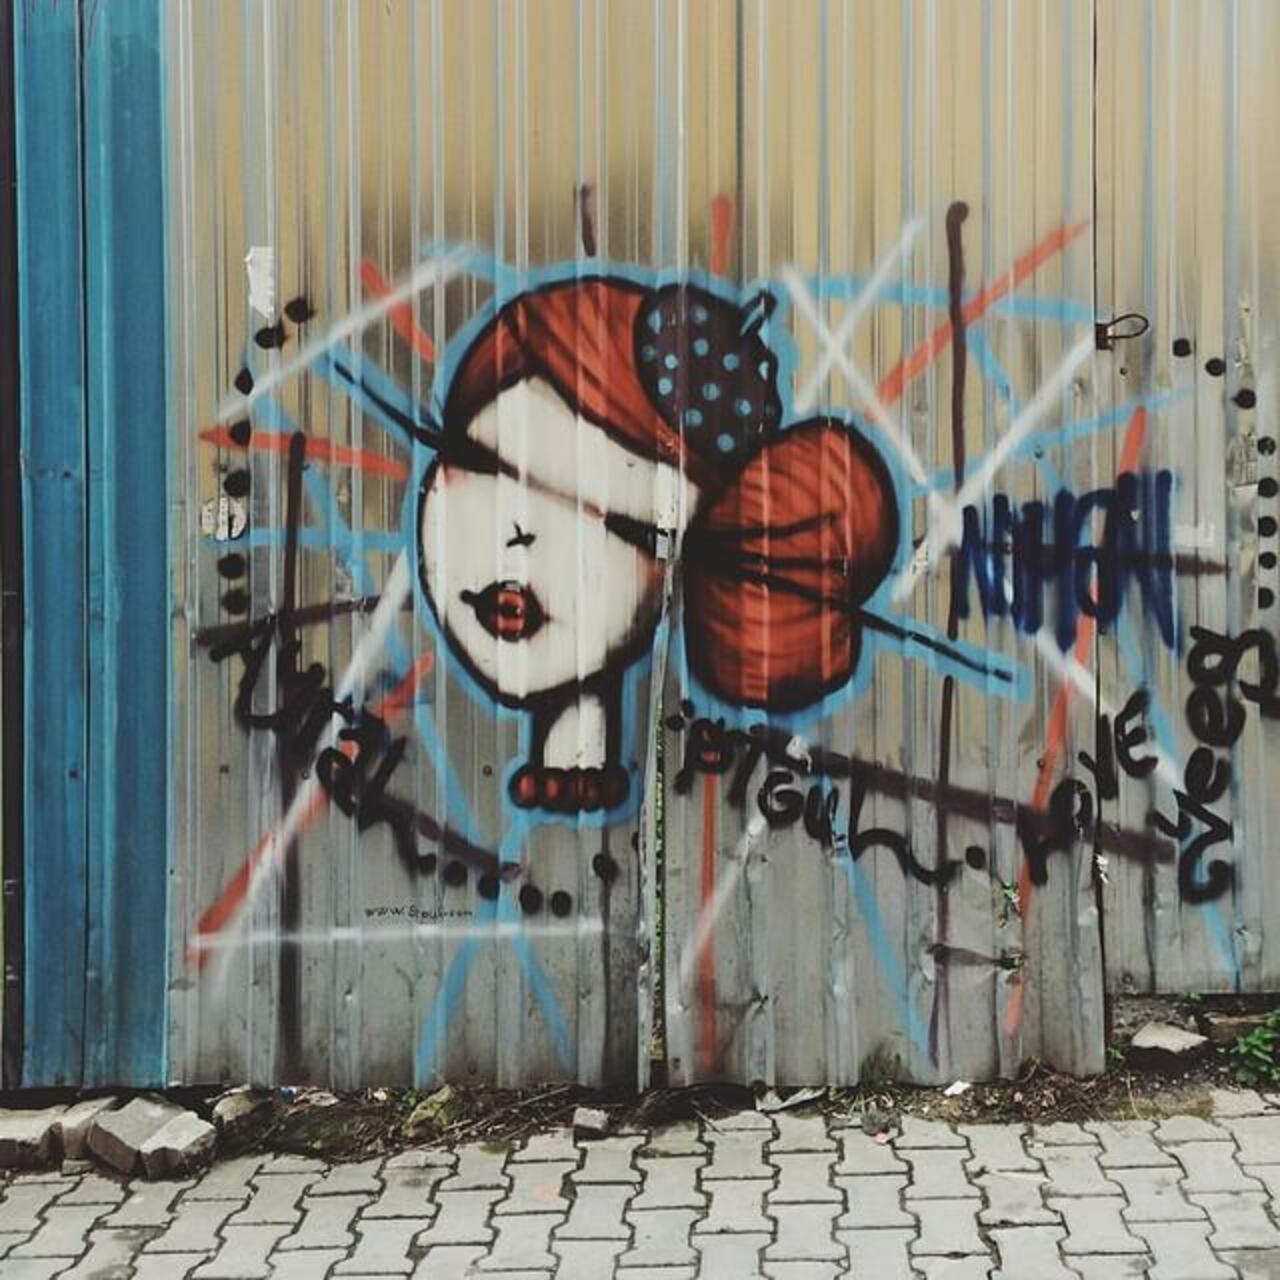 ✌️ #vsco #vscocam #vscophile #streetart #streetartistanbul #istanbulstreetart #graffiti #mural #urban #urbanart #in… http://t.co/kBvB37ZR7X